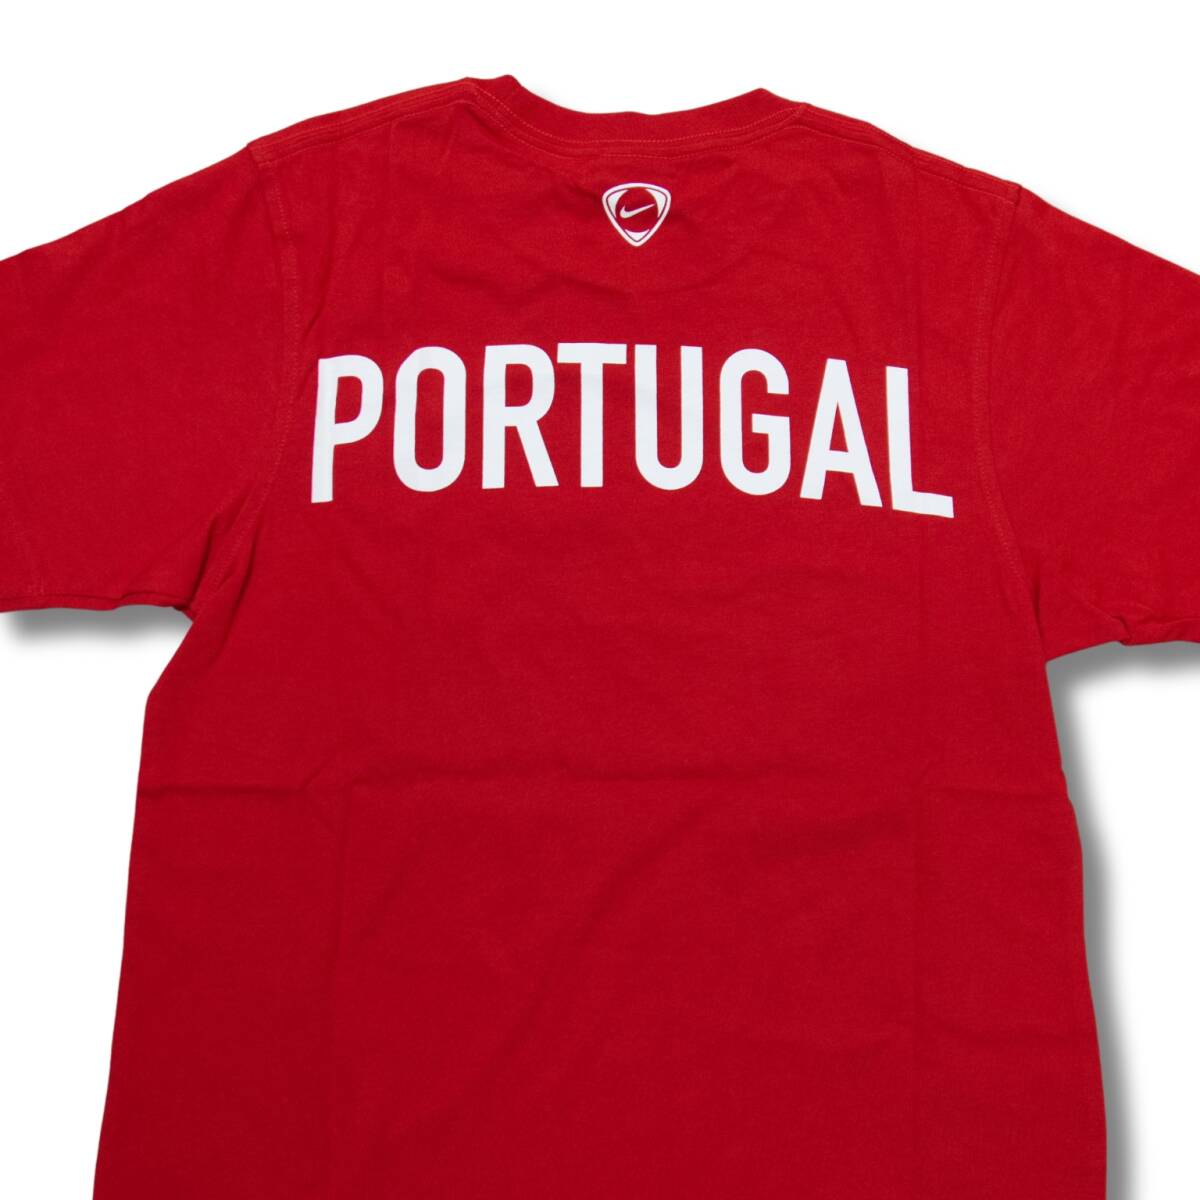 即決☆ナイキ ポルトガル代表Tシャツ US Lサイズ 日本サイズ XL 送料無料 半袖 ナイキジャパン国内正規品 NIKE